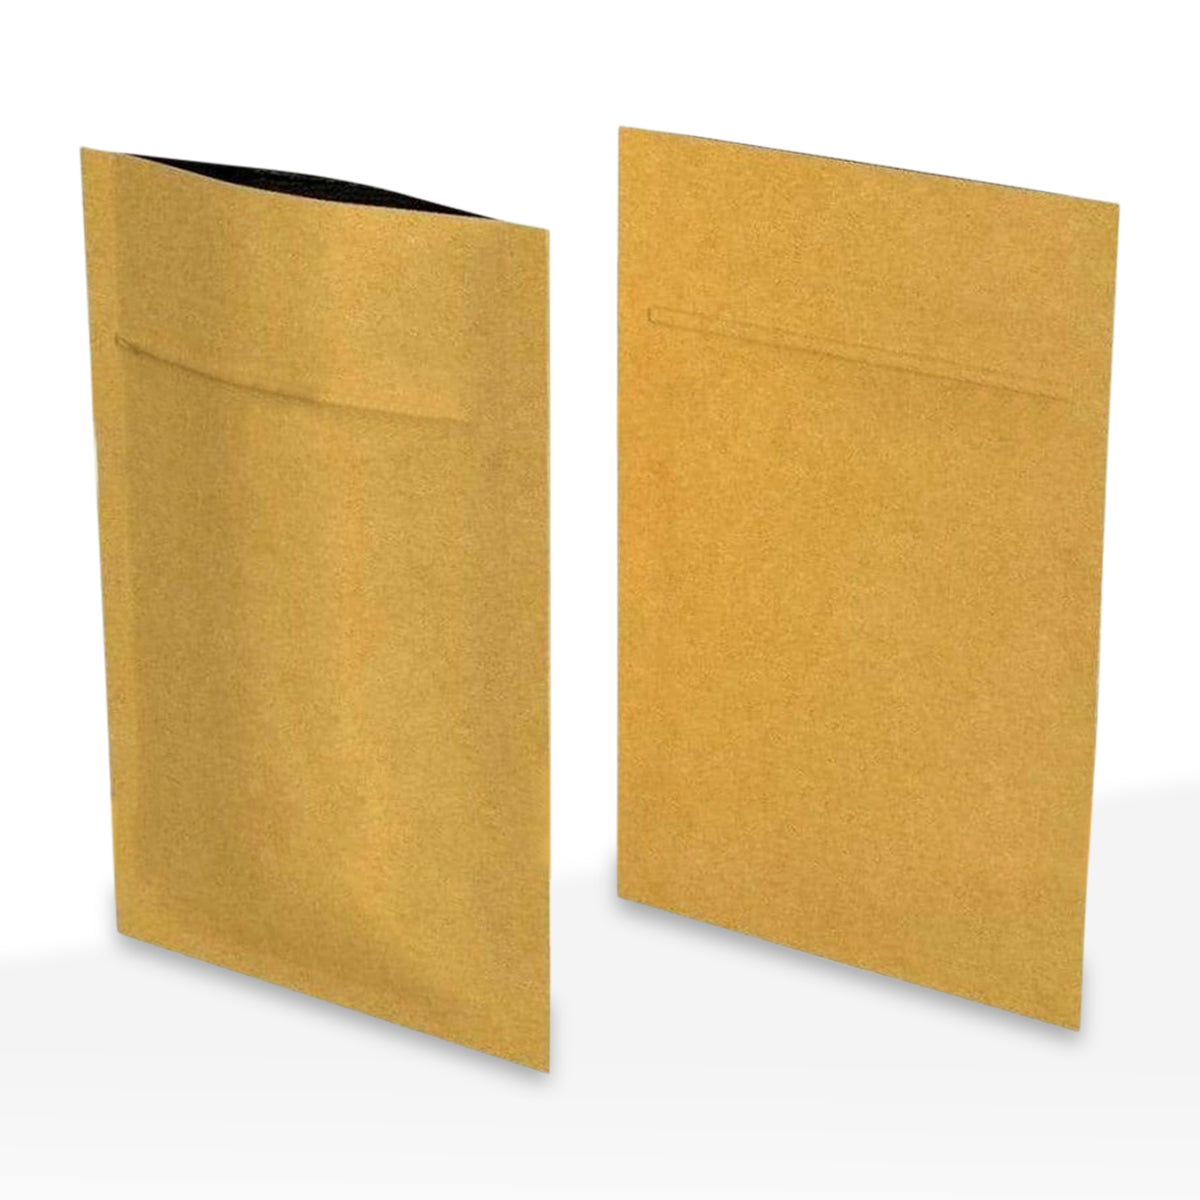 Tamper Evident | Matte Kraft Paper Mylar Bags | 3" x 4 - 1g - 1,000 Count